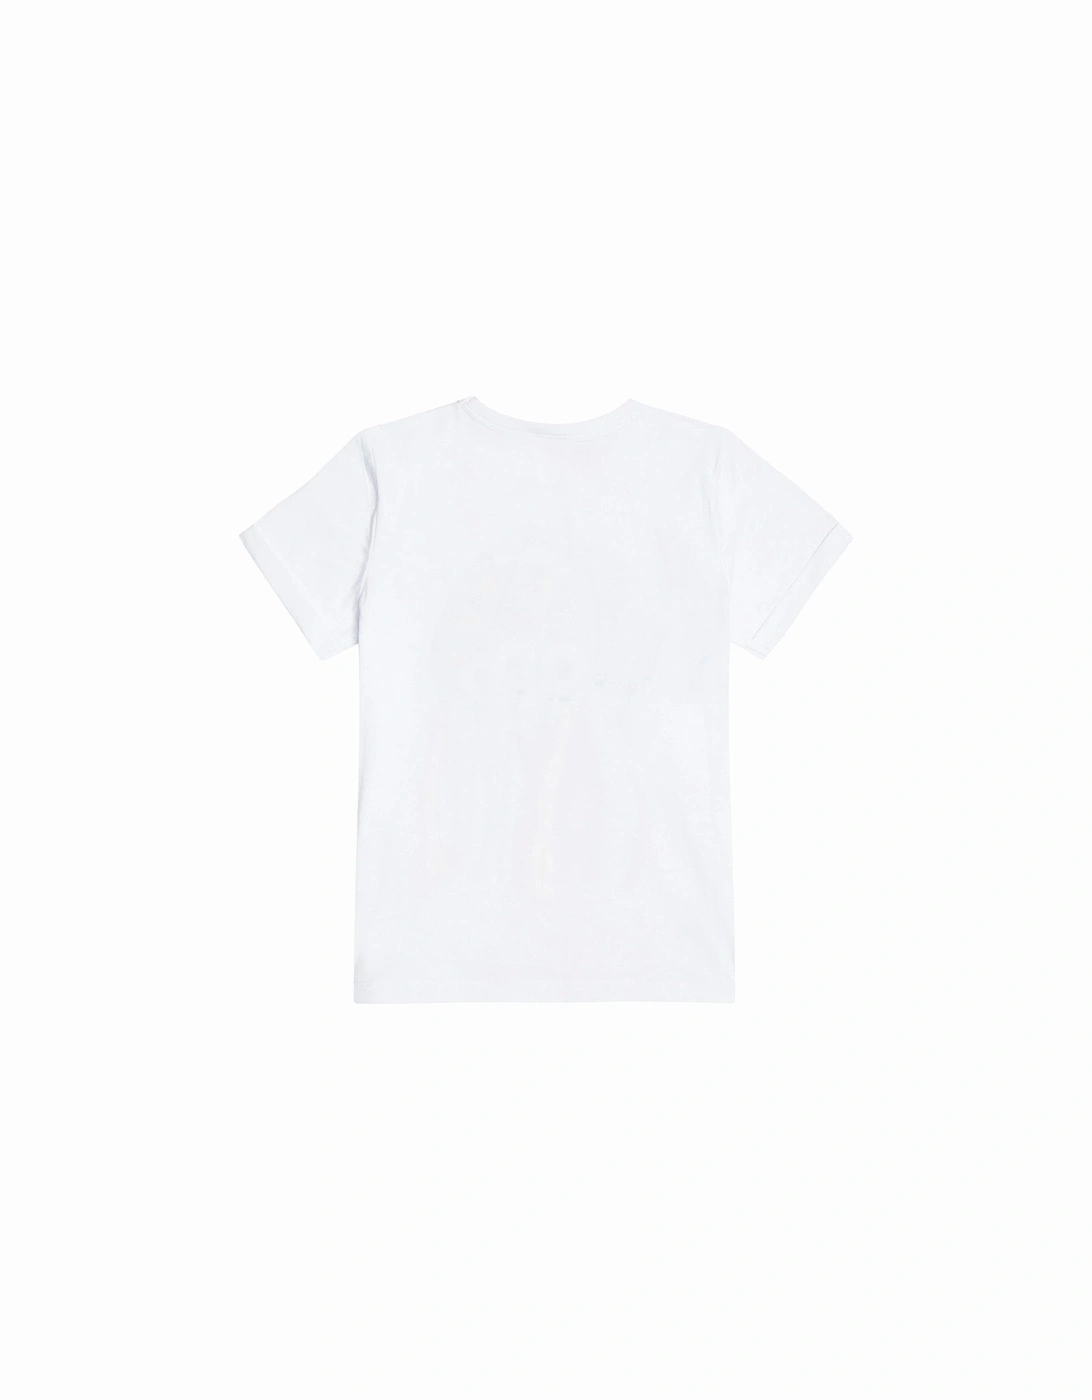 Girls Jellyfish T-shirt White